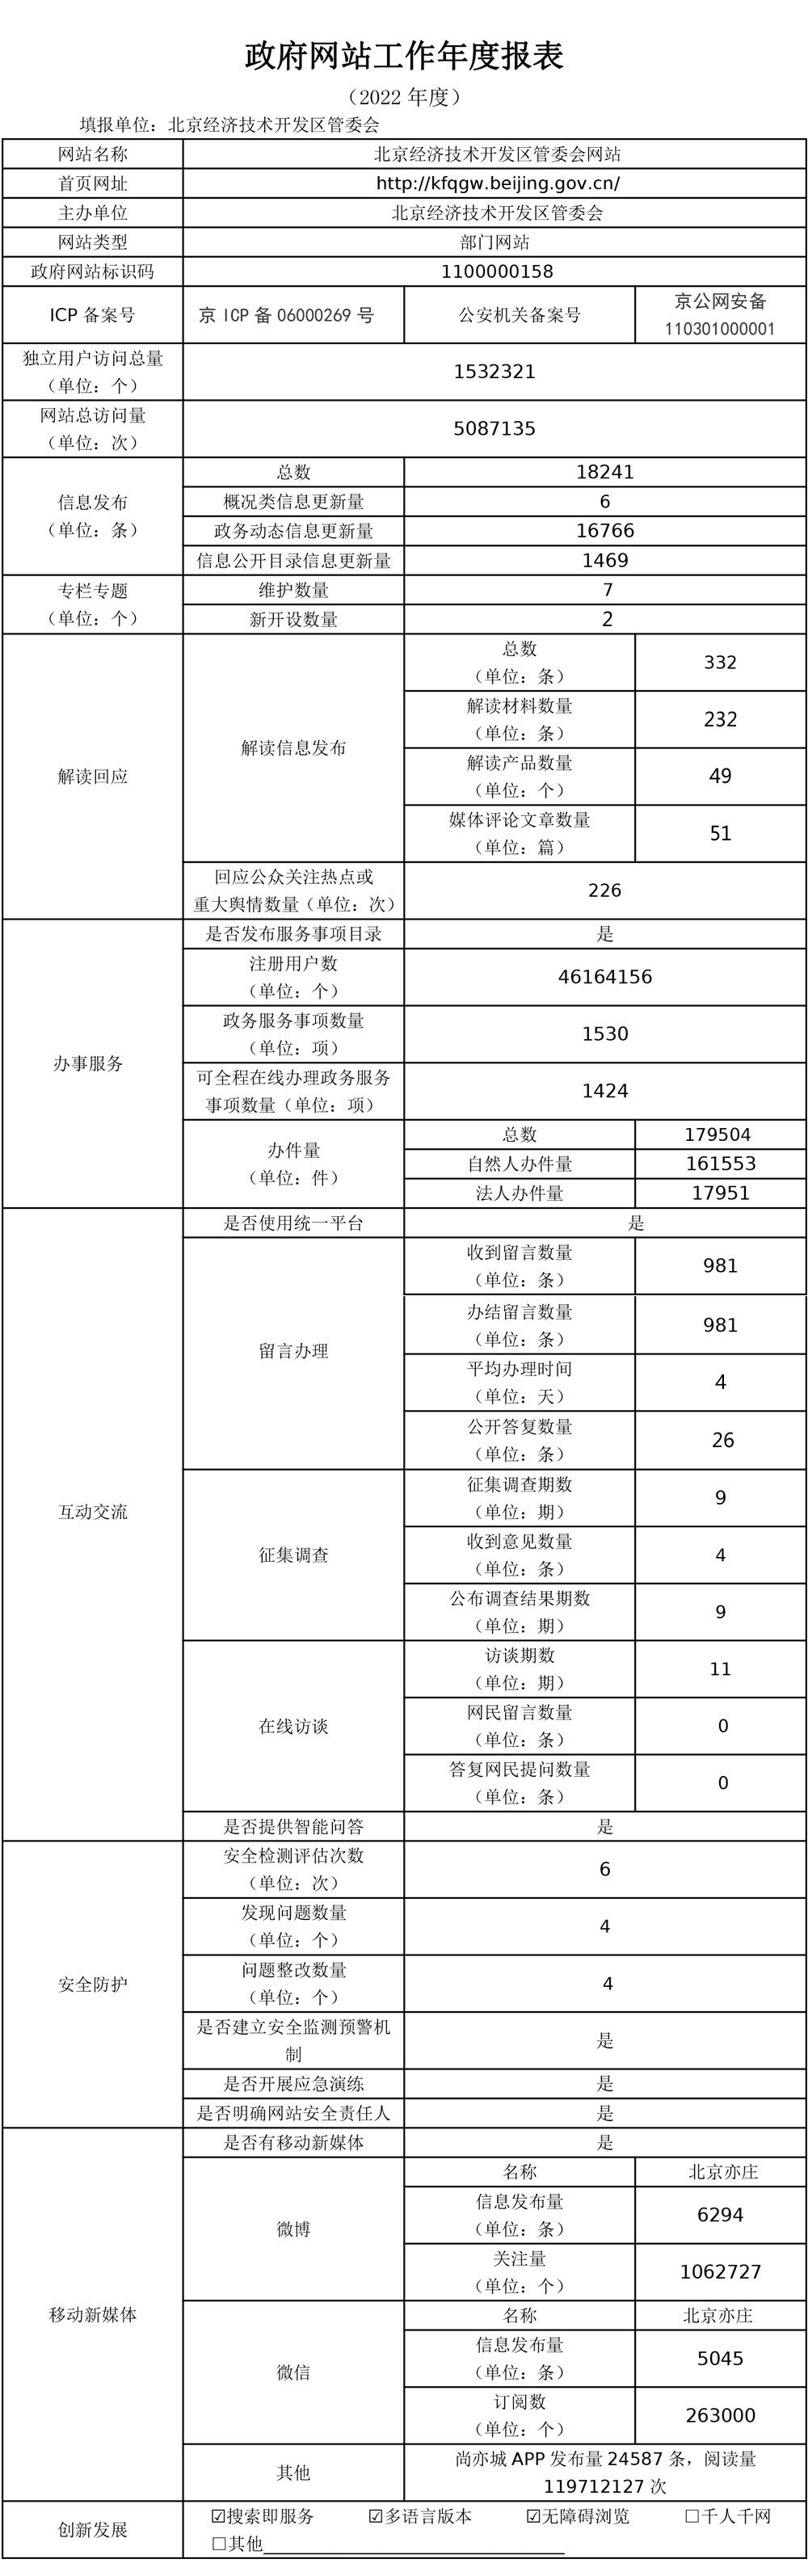 北京经济技术开发区管委会网站2022年度工作报表-2.jpg